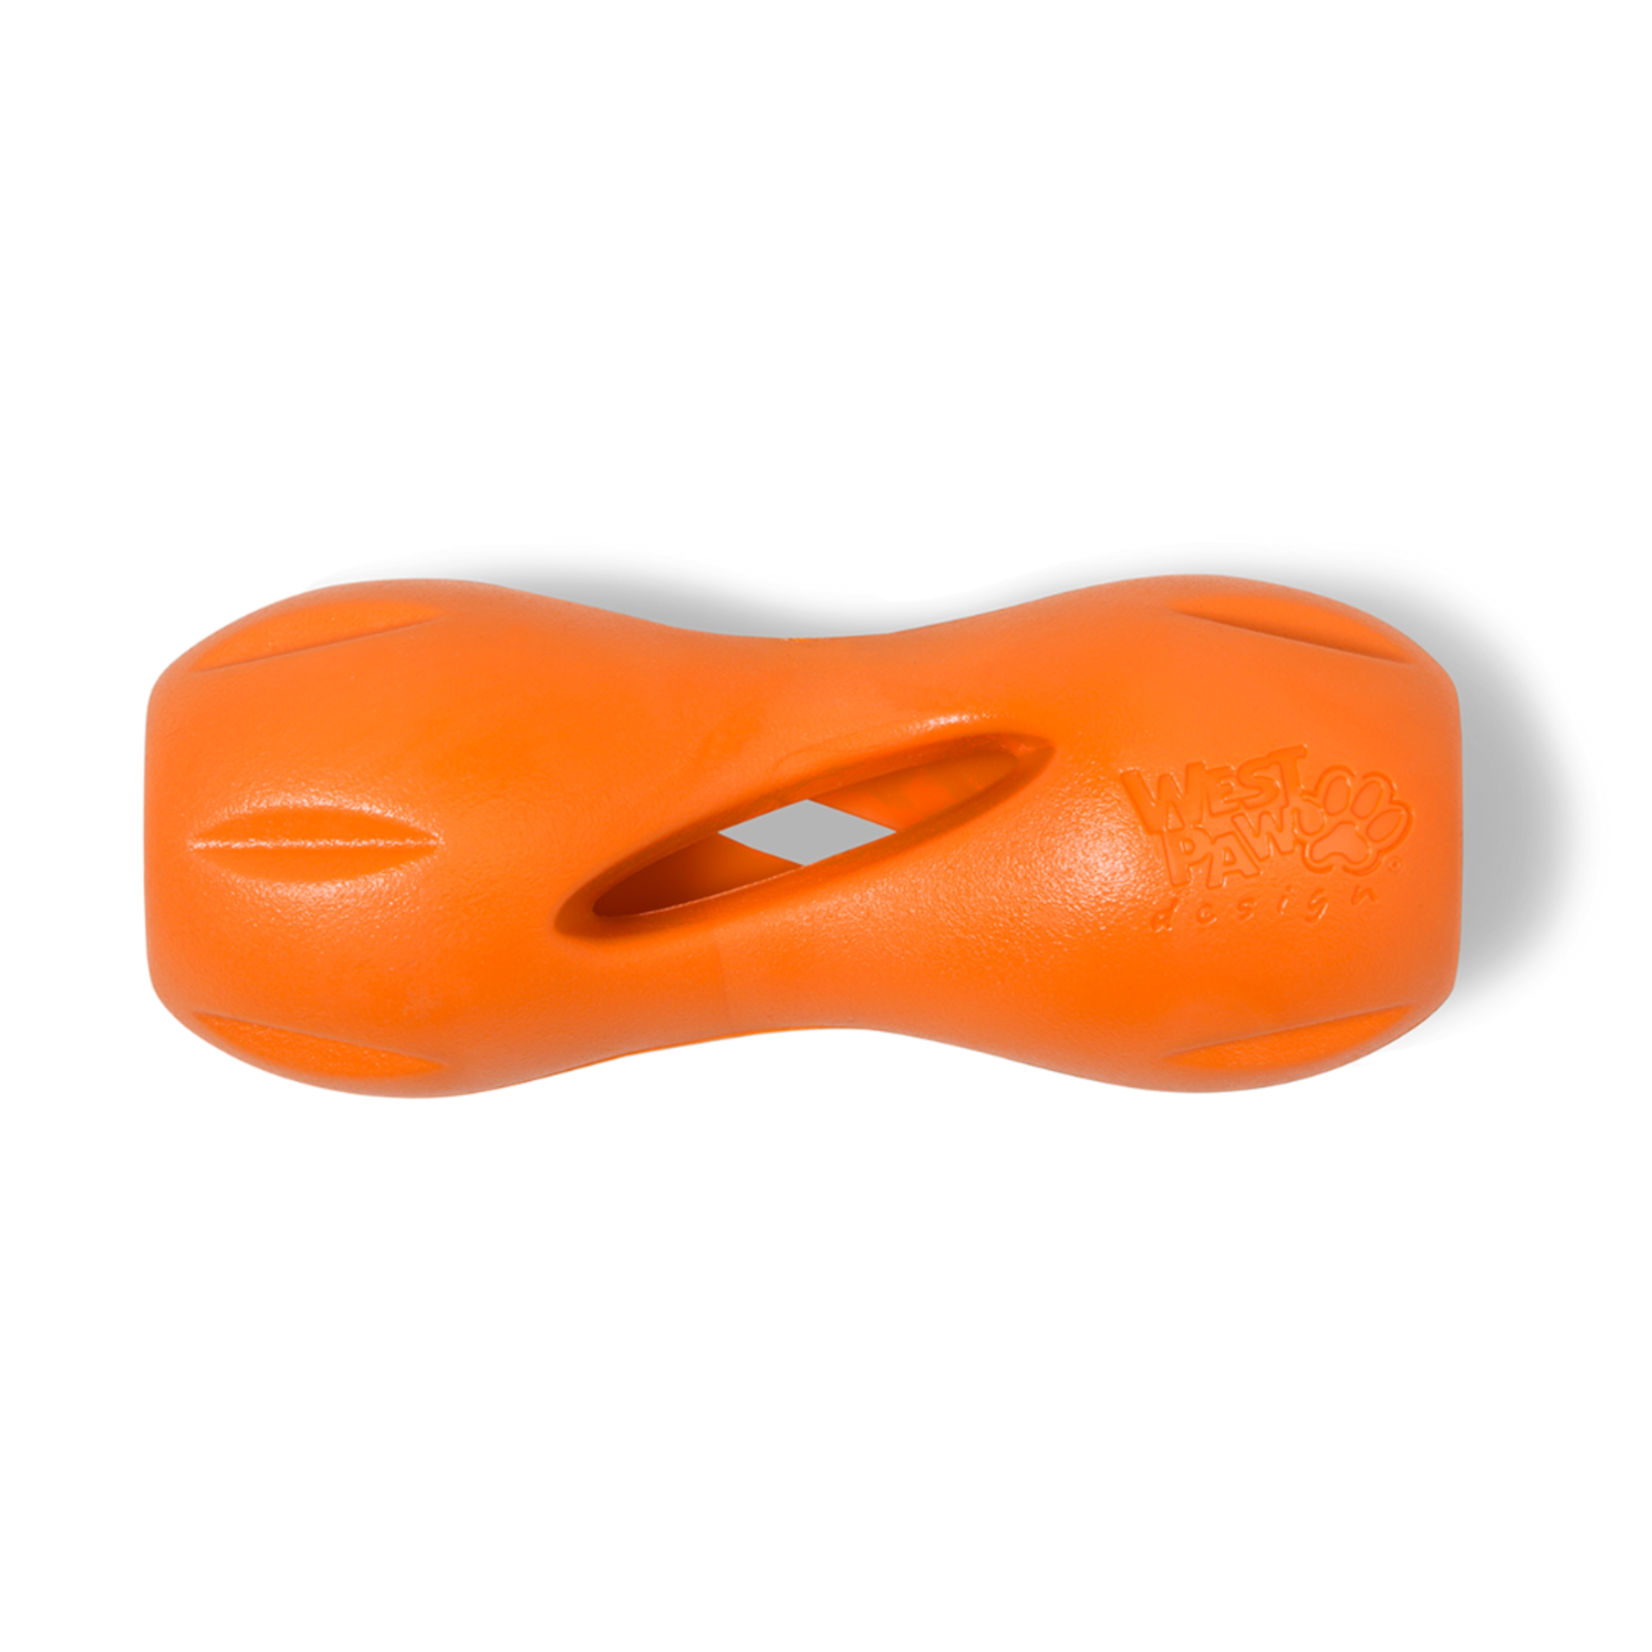 West Paw Qwizl Small 5.5" - orange dog toy